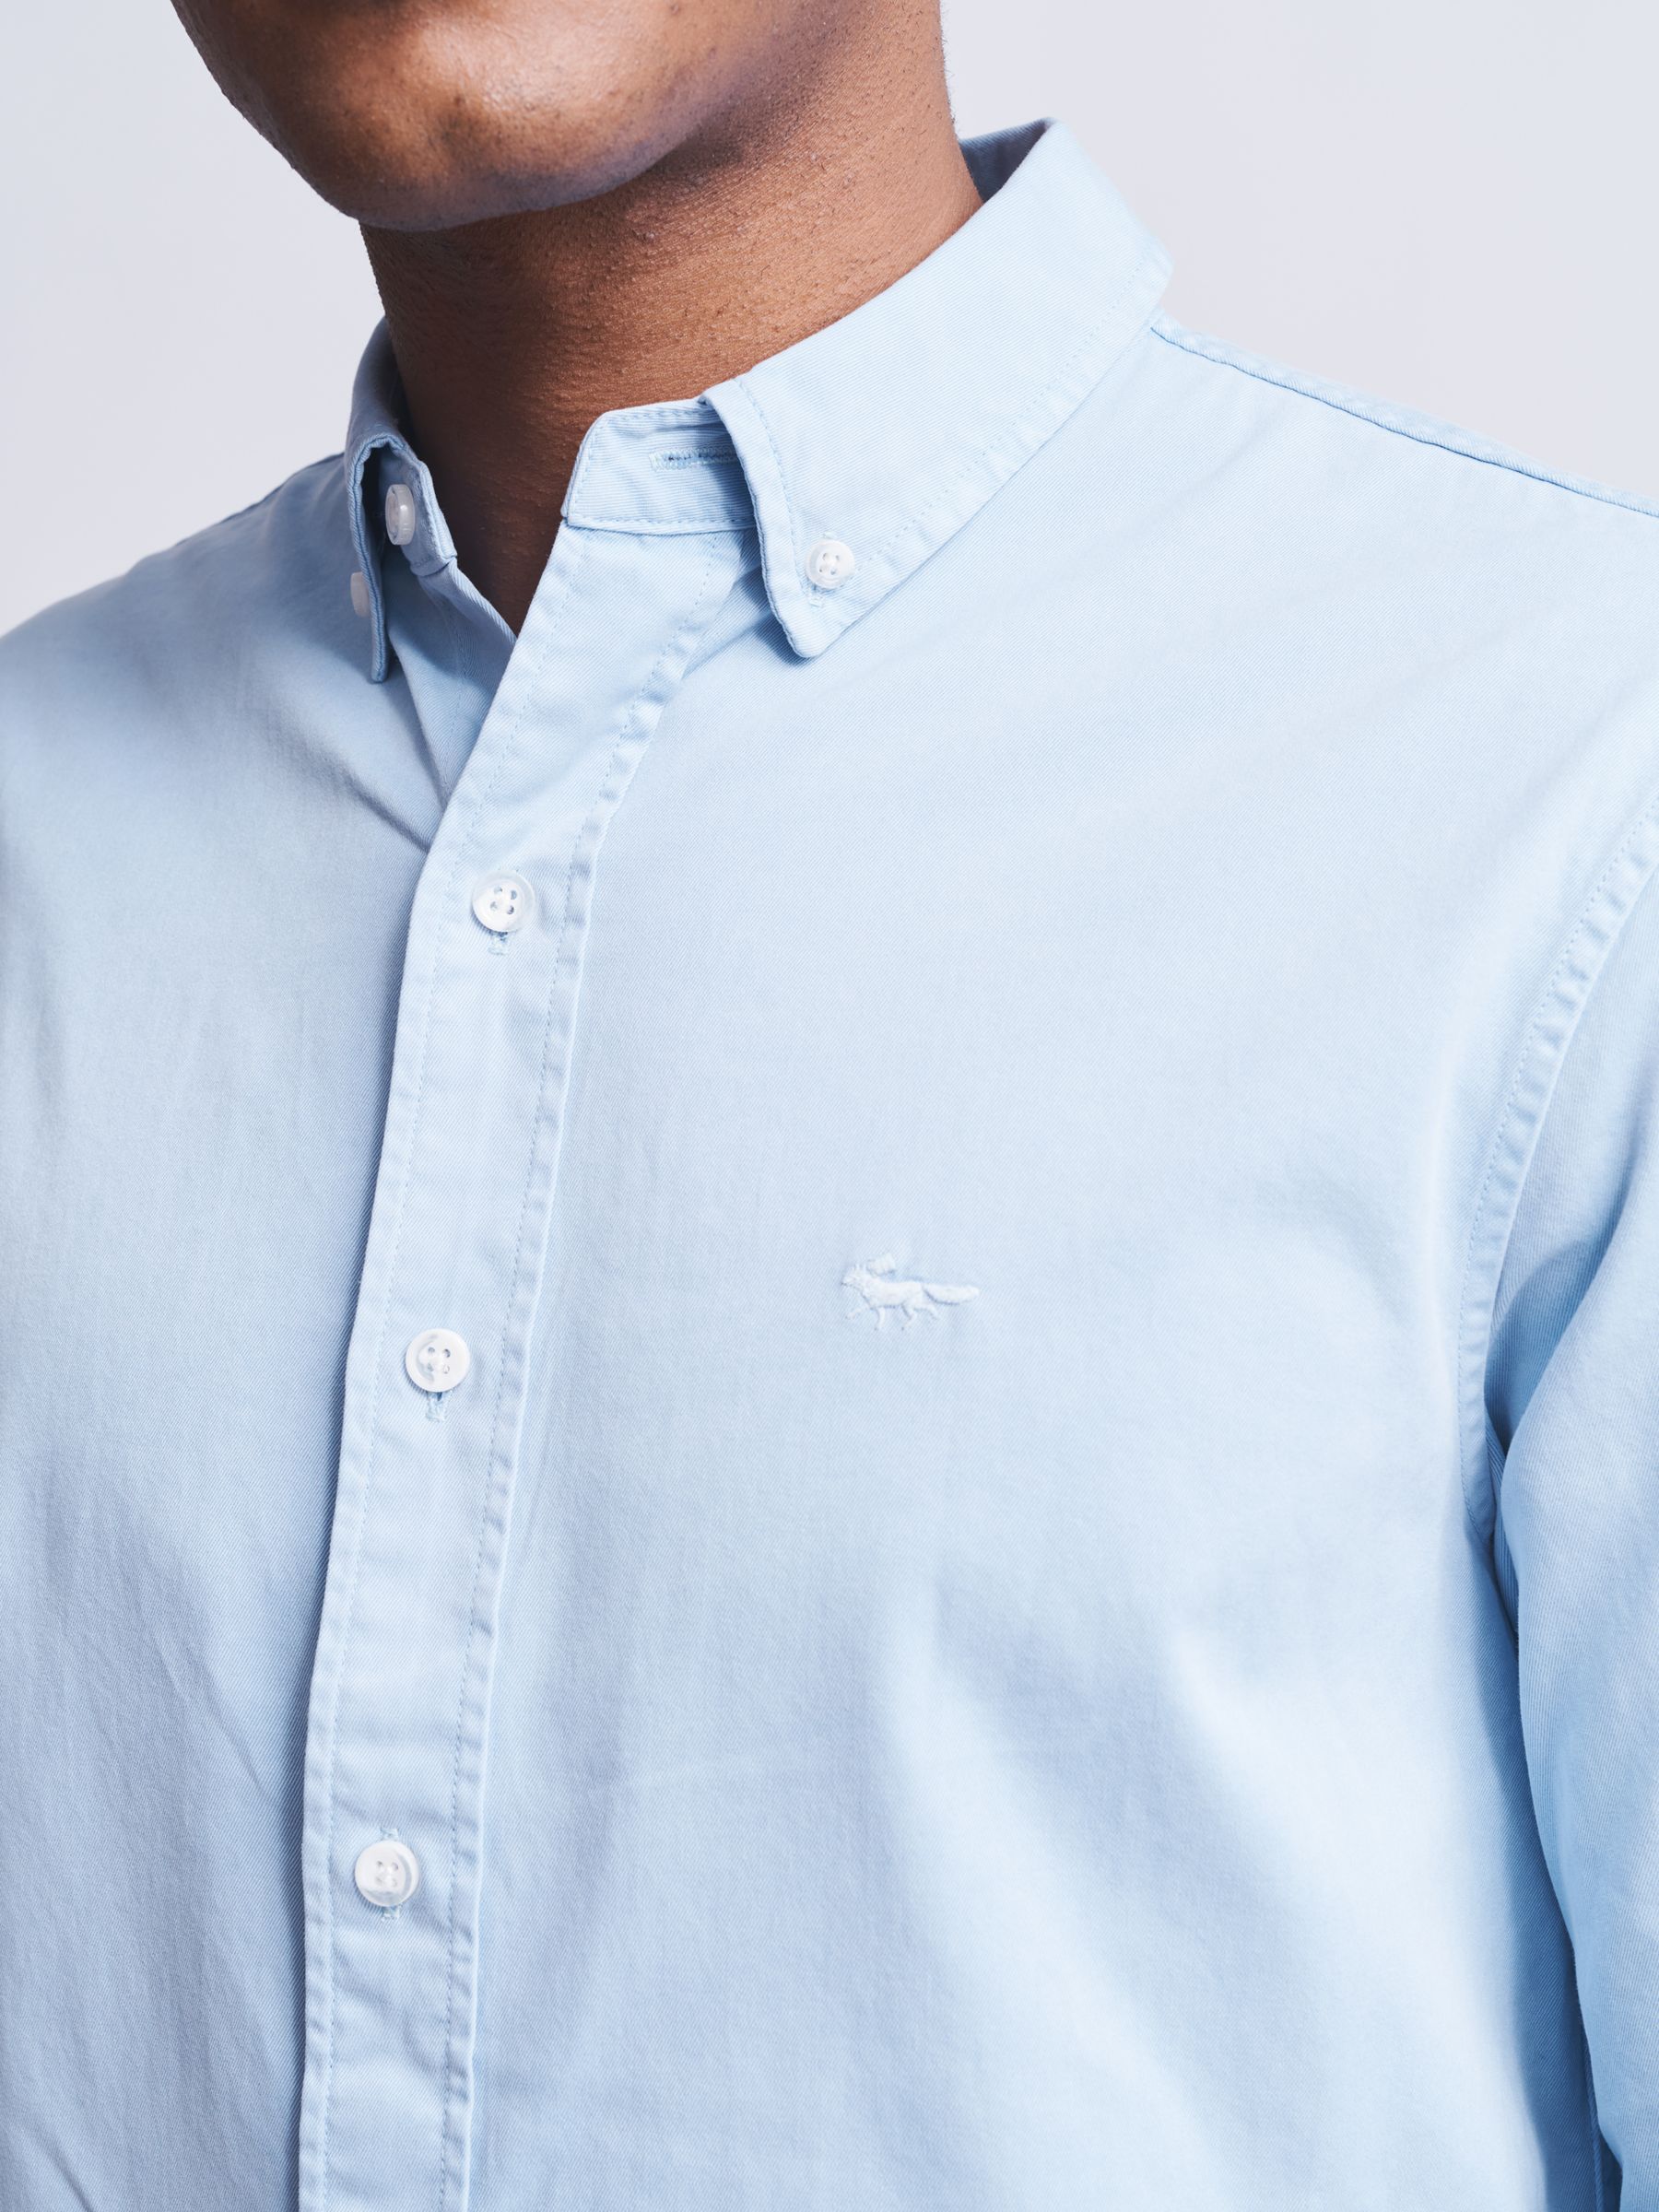 Aubin Hessle Garment Dyed Cotton Shirt, Pale Blue, S